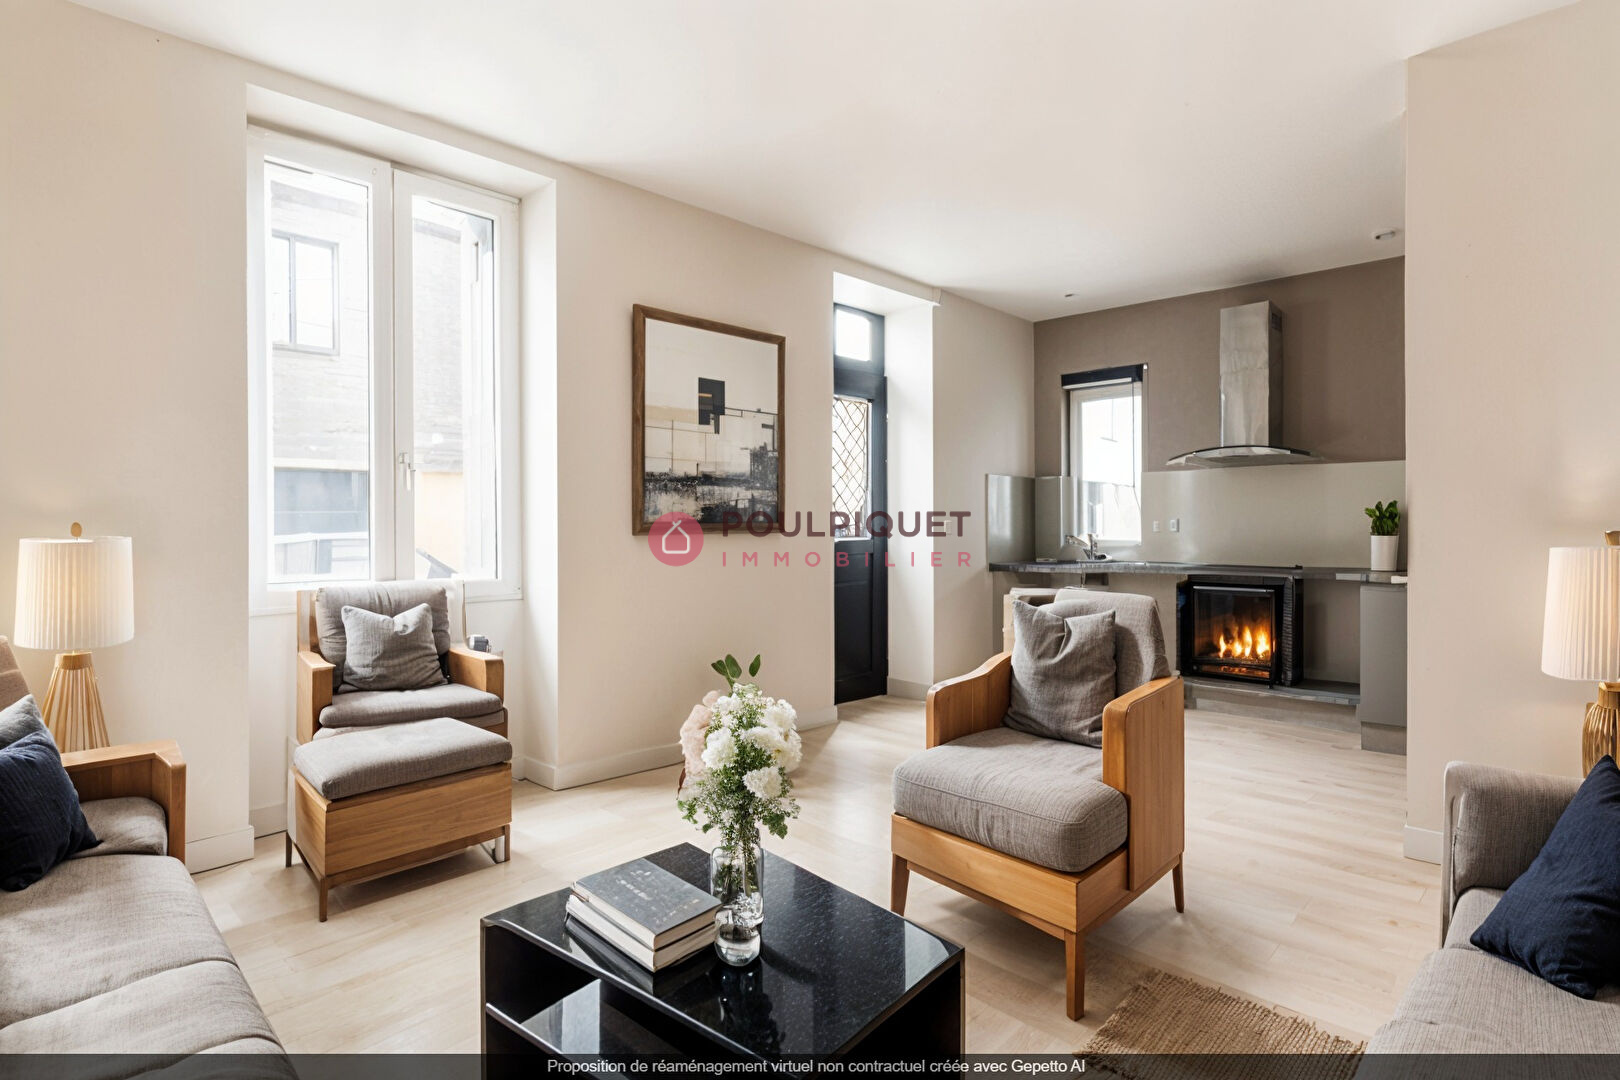 Vente Appartement 50m² 2 Pièces à Nantes (44000) - Poulpiquet Immobilier